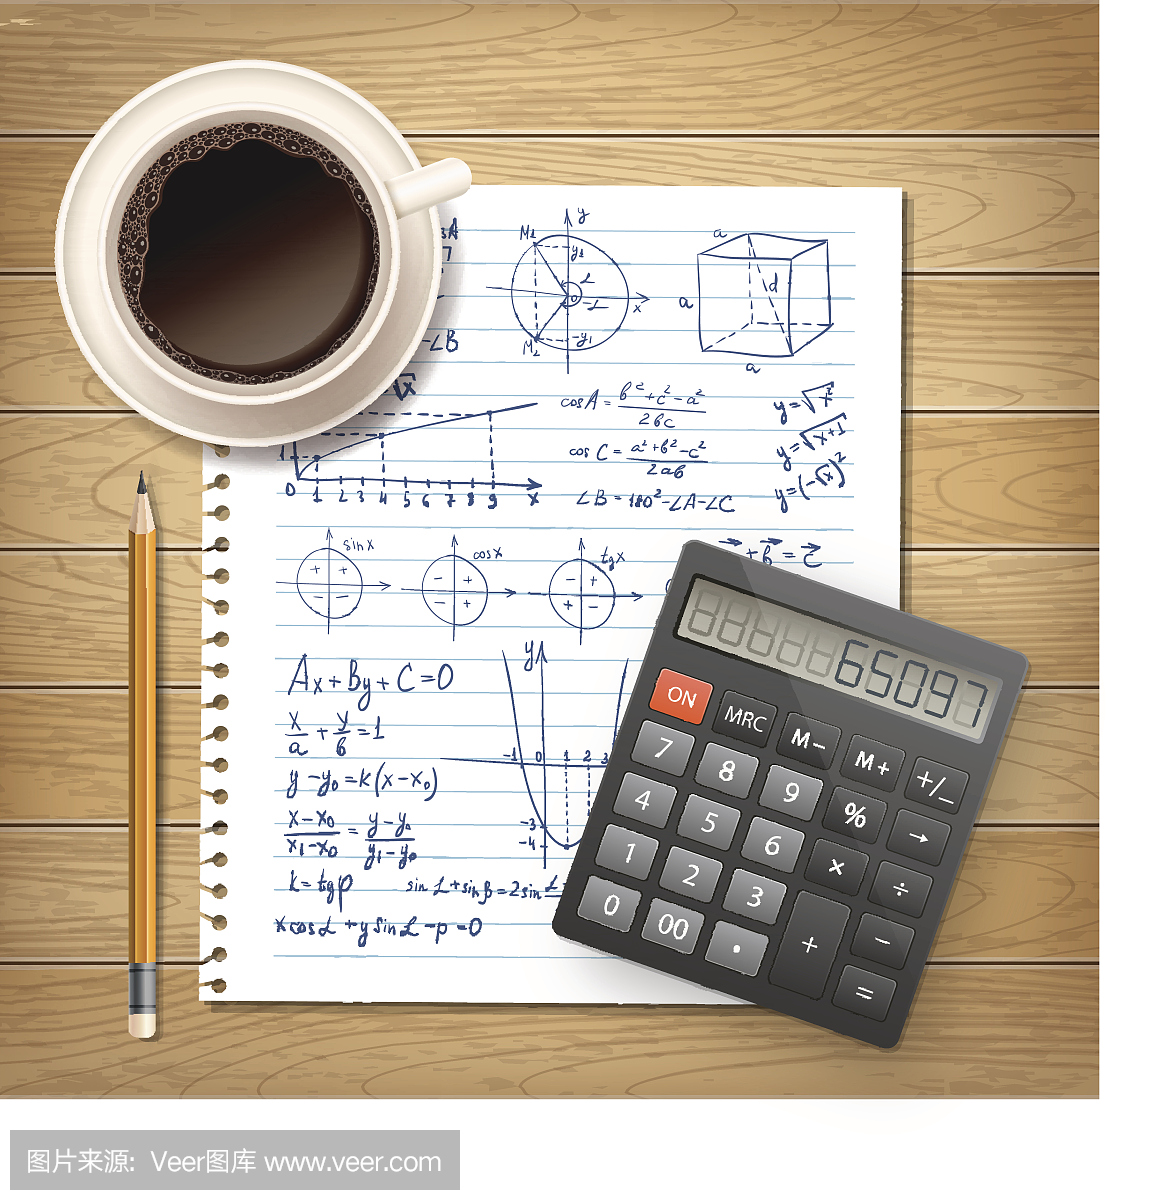 插图与公式,计算器和一杯咖啡